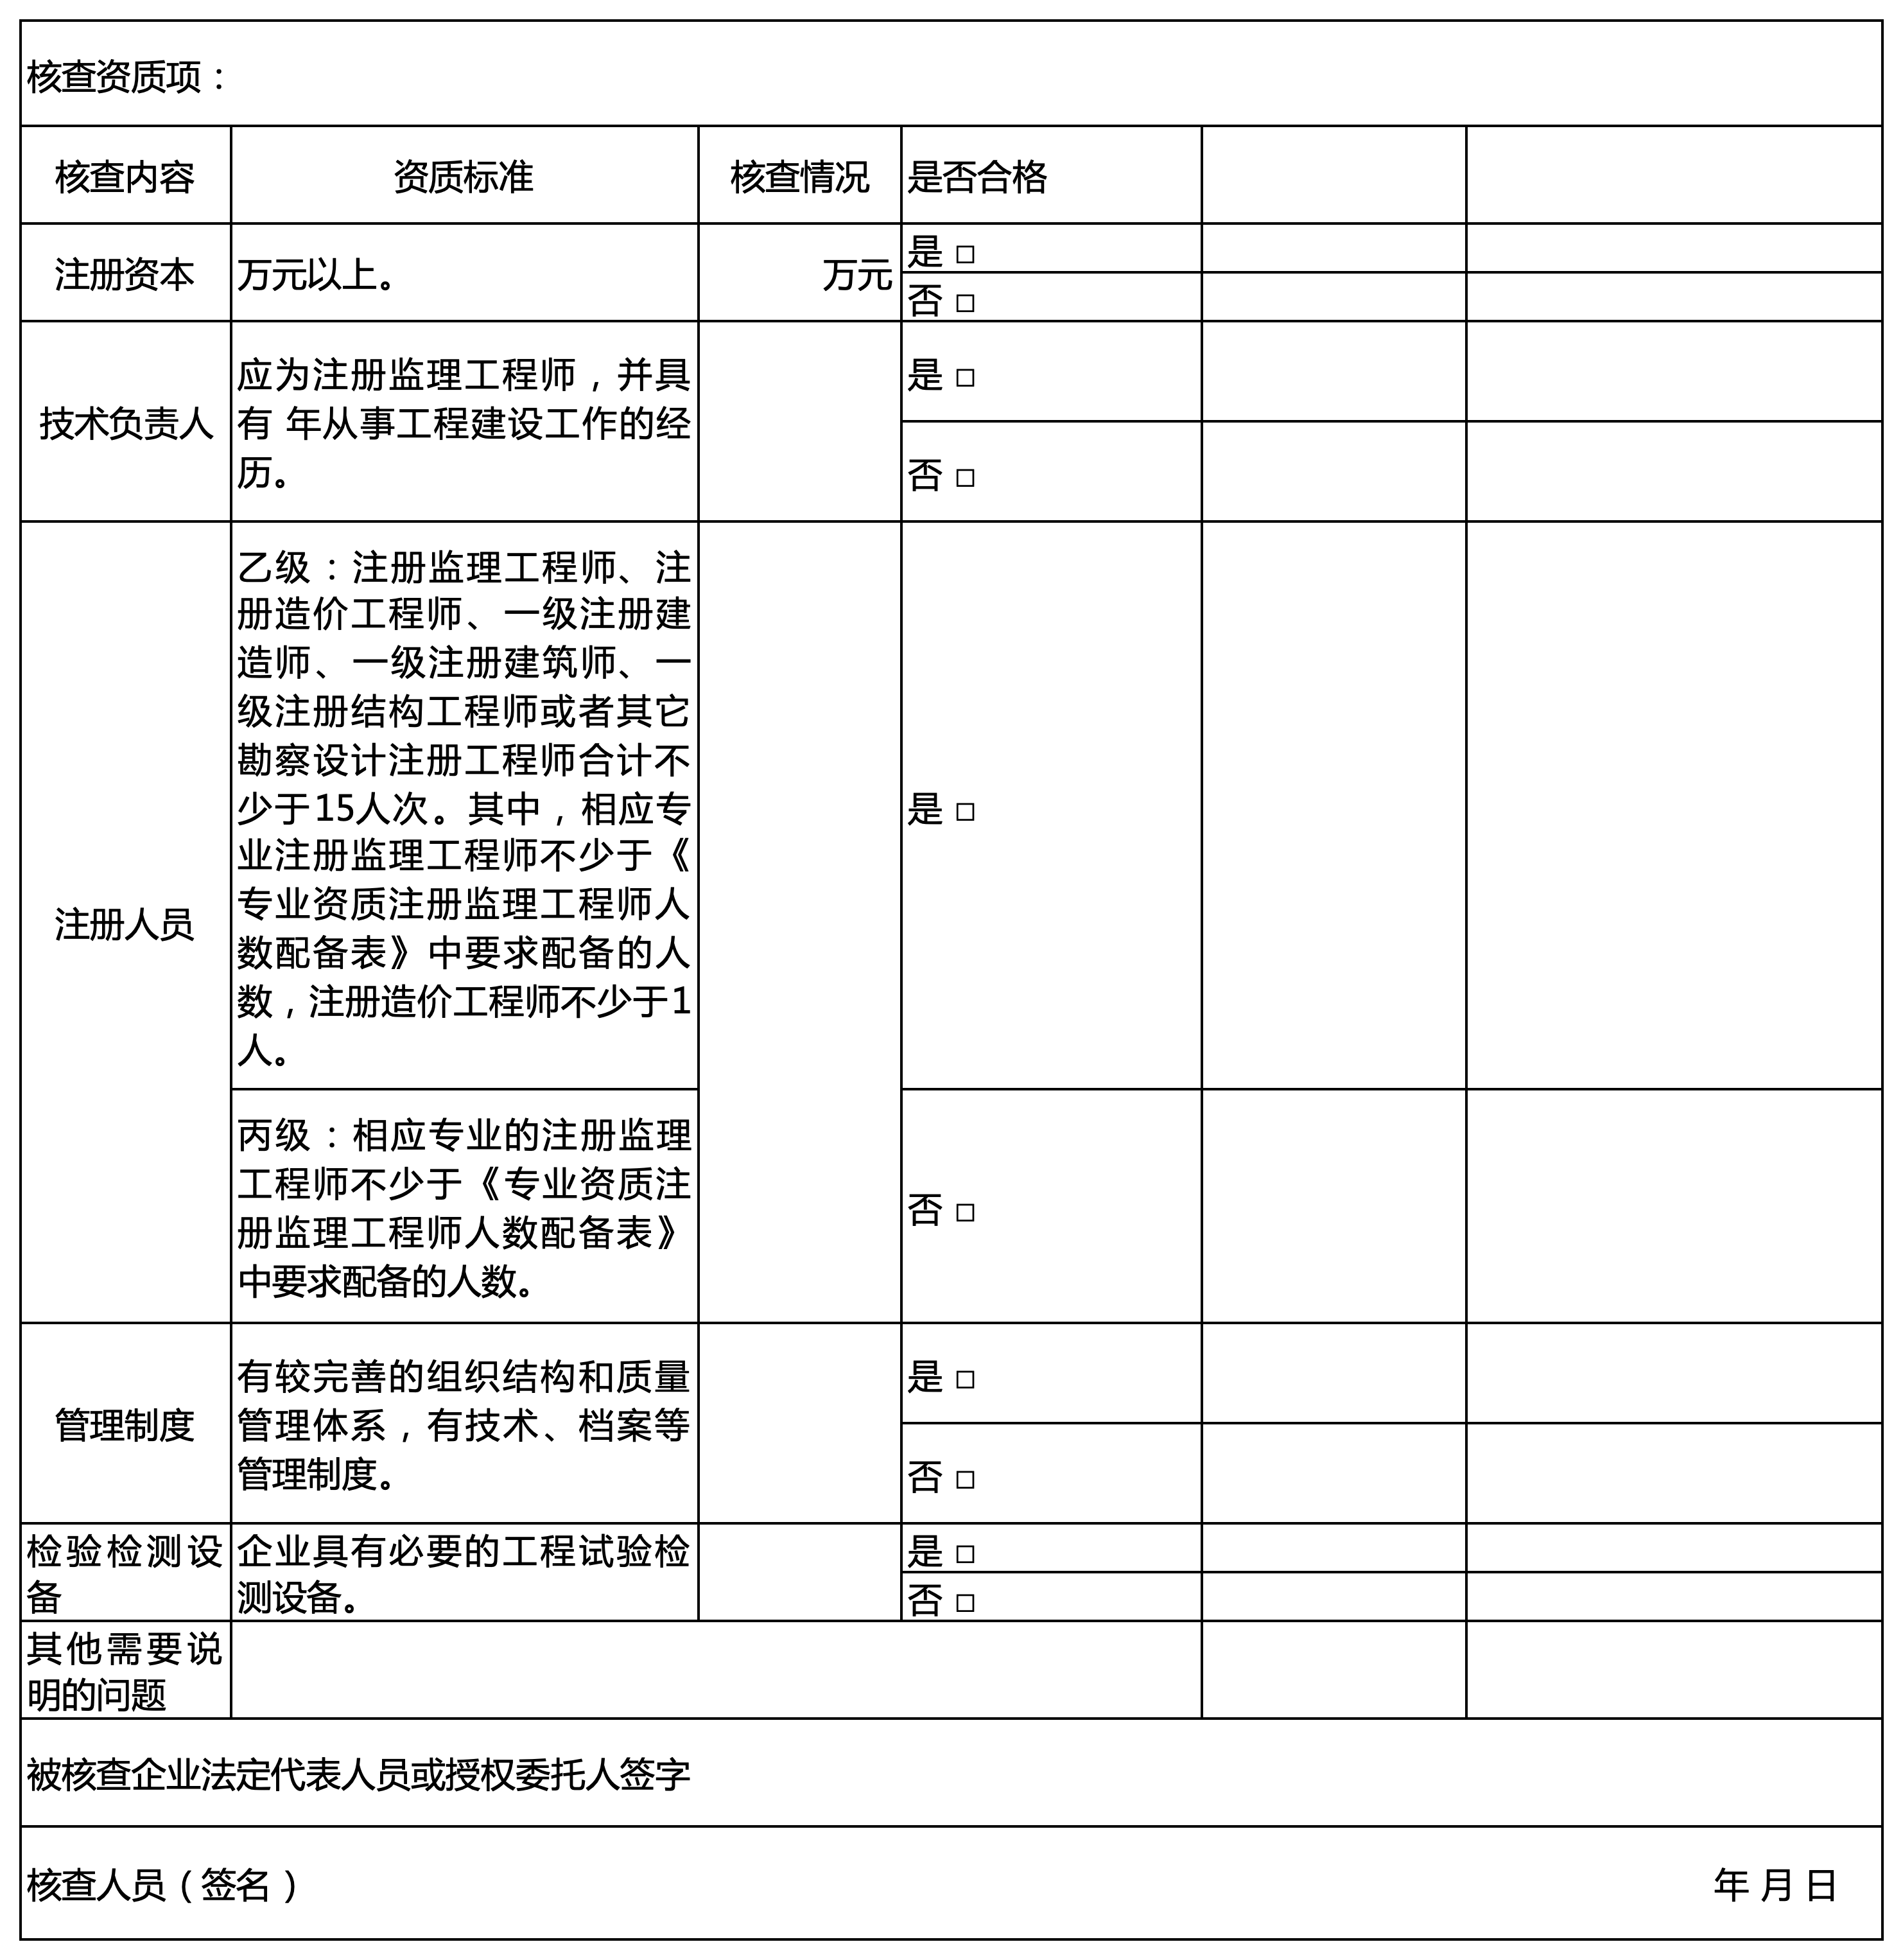 海南省建筑业企业资质动态核查表3.png